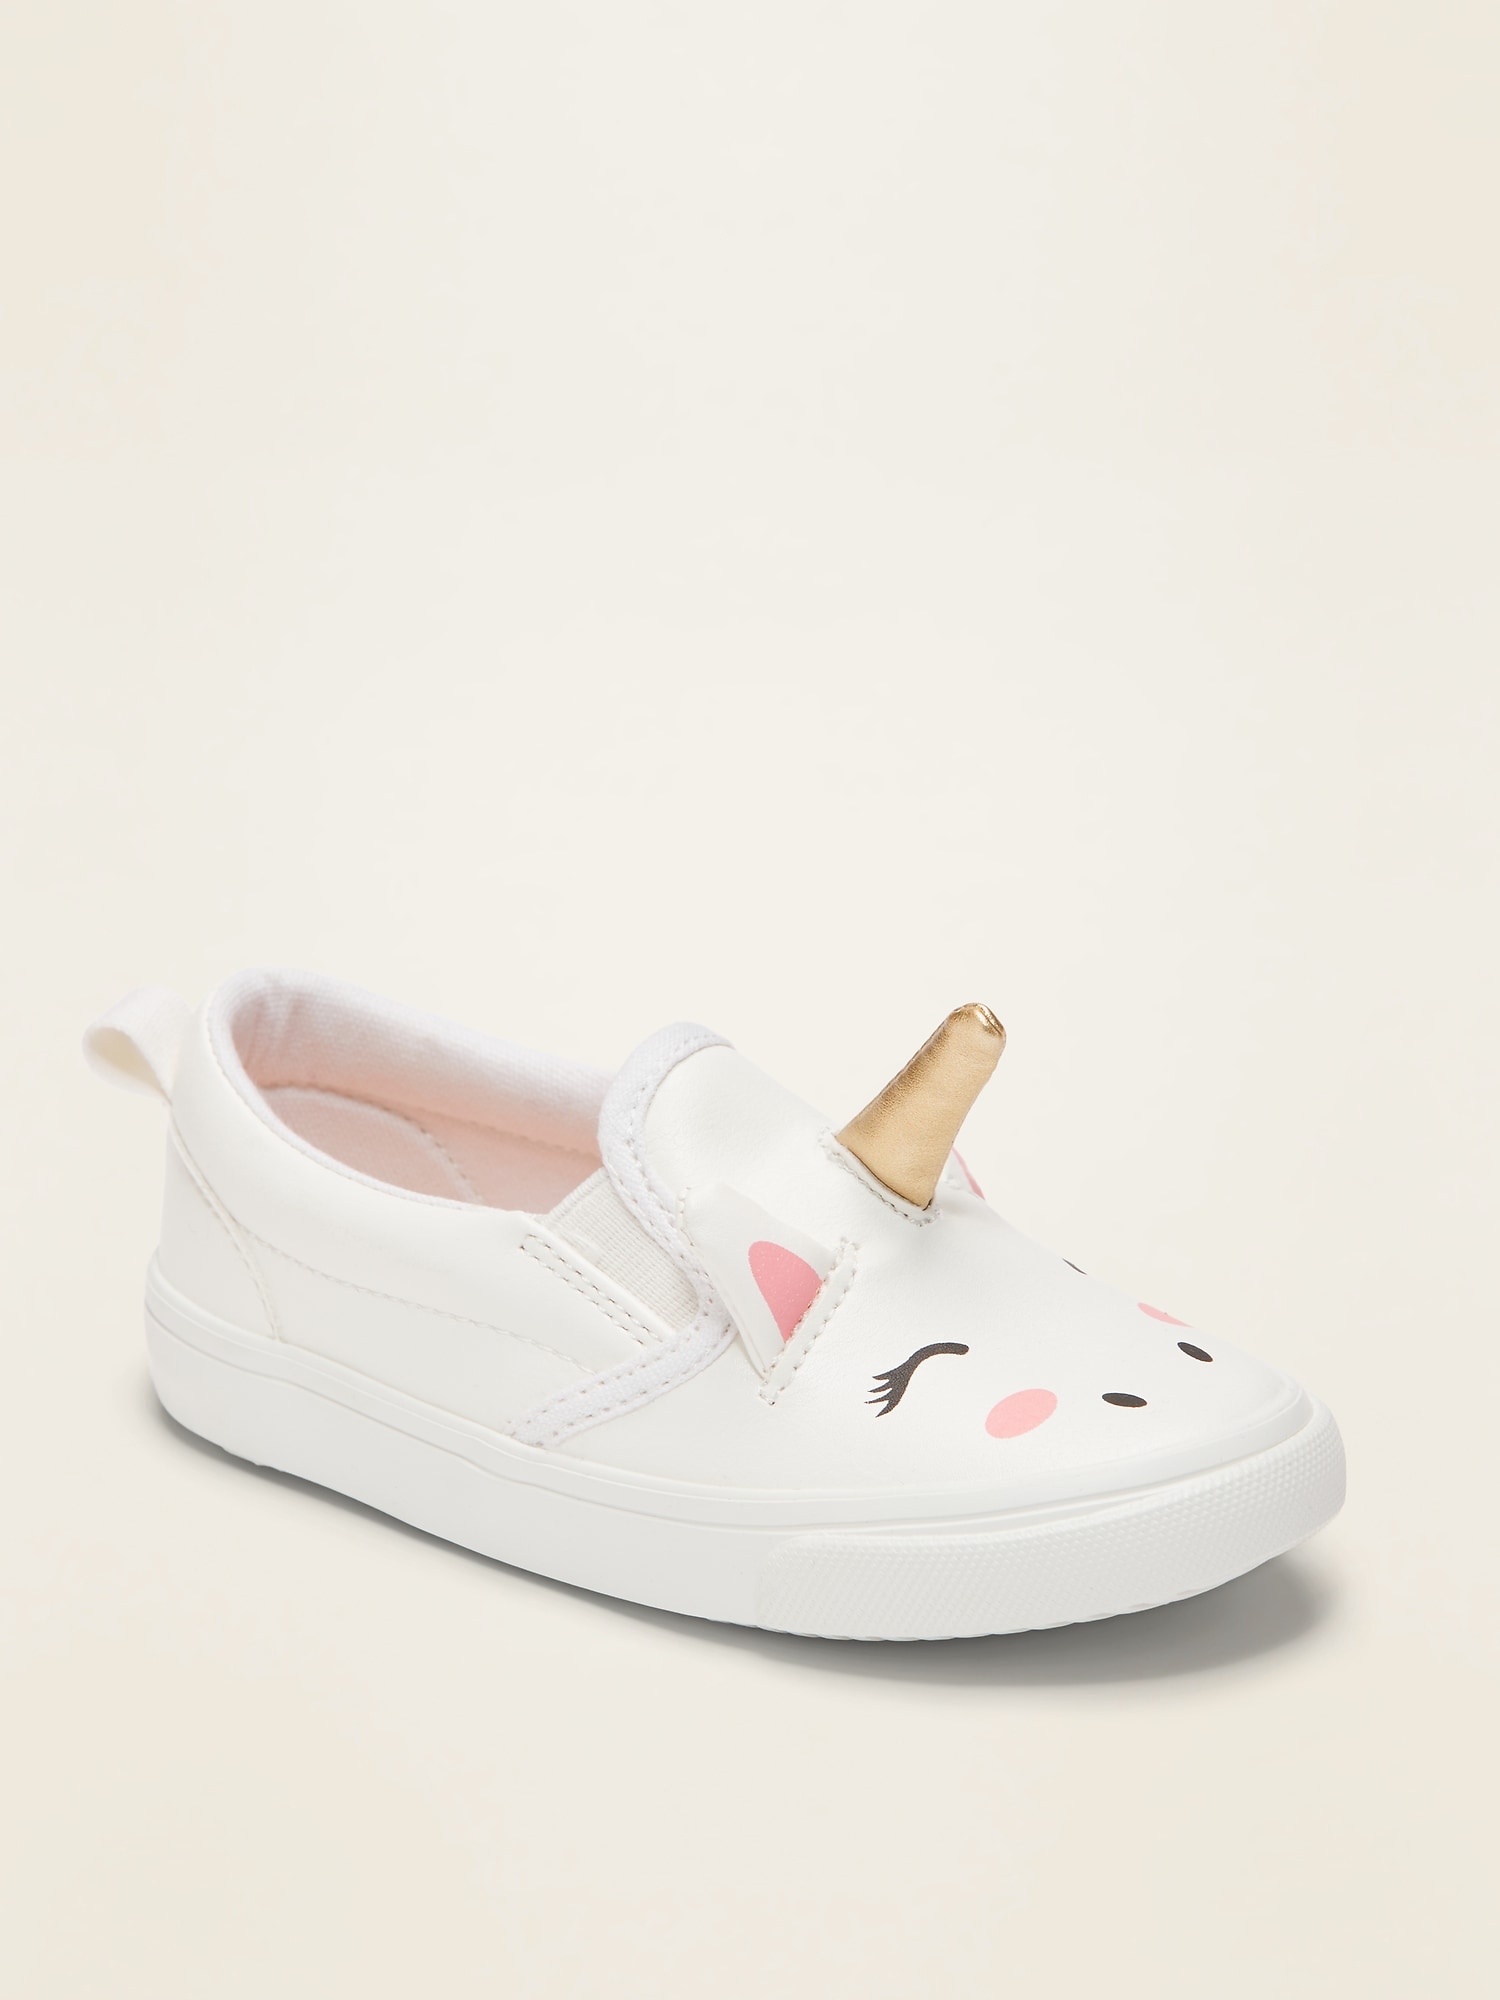 Unisex Unicorn Slip-On Sneakers For Toddler | Old Navy